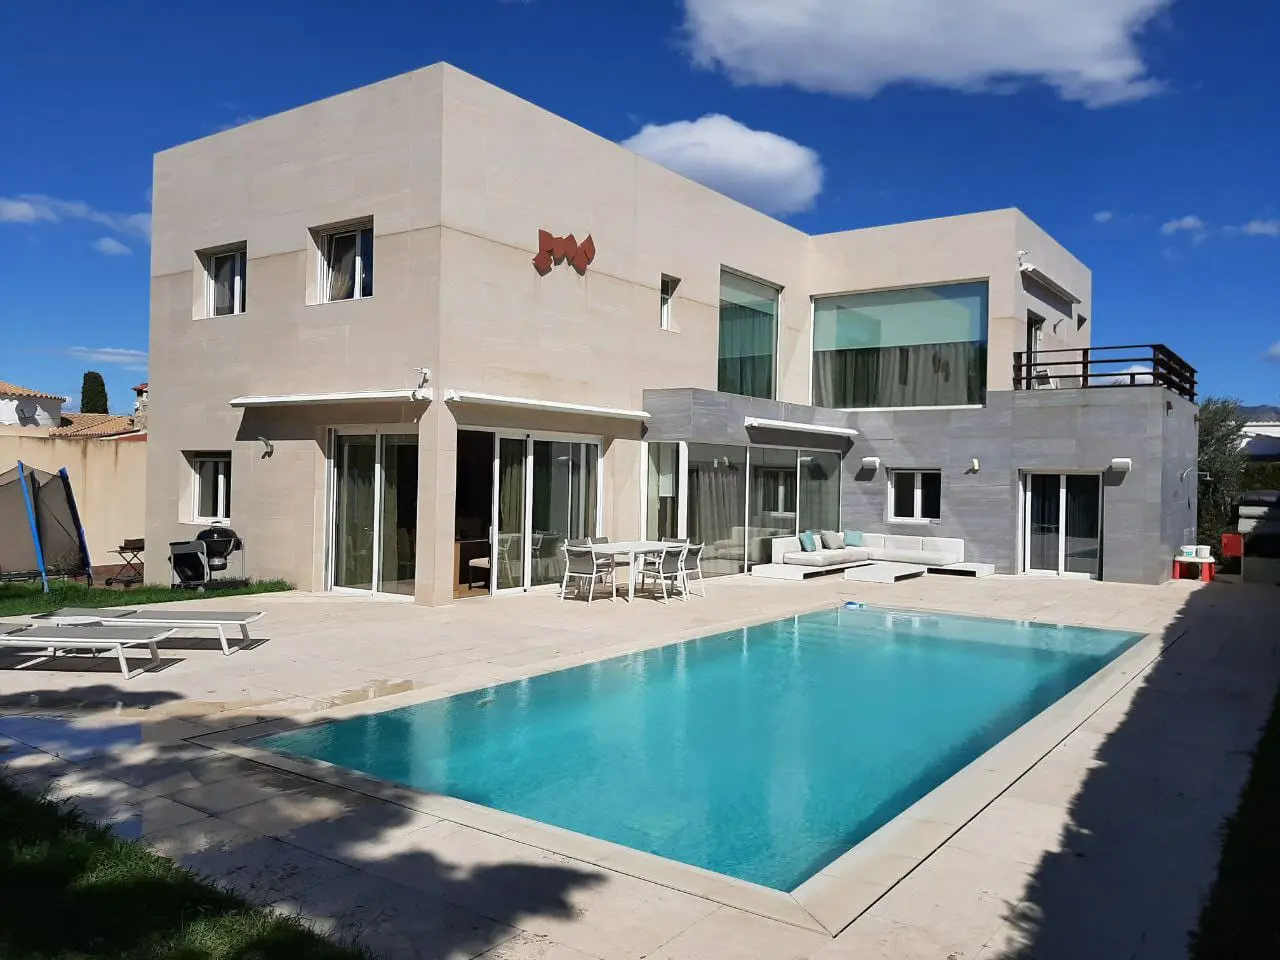 Gran casa moderna amb piscina al centre